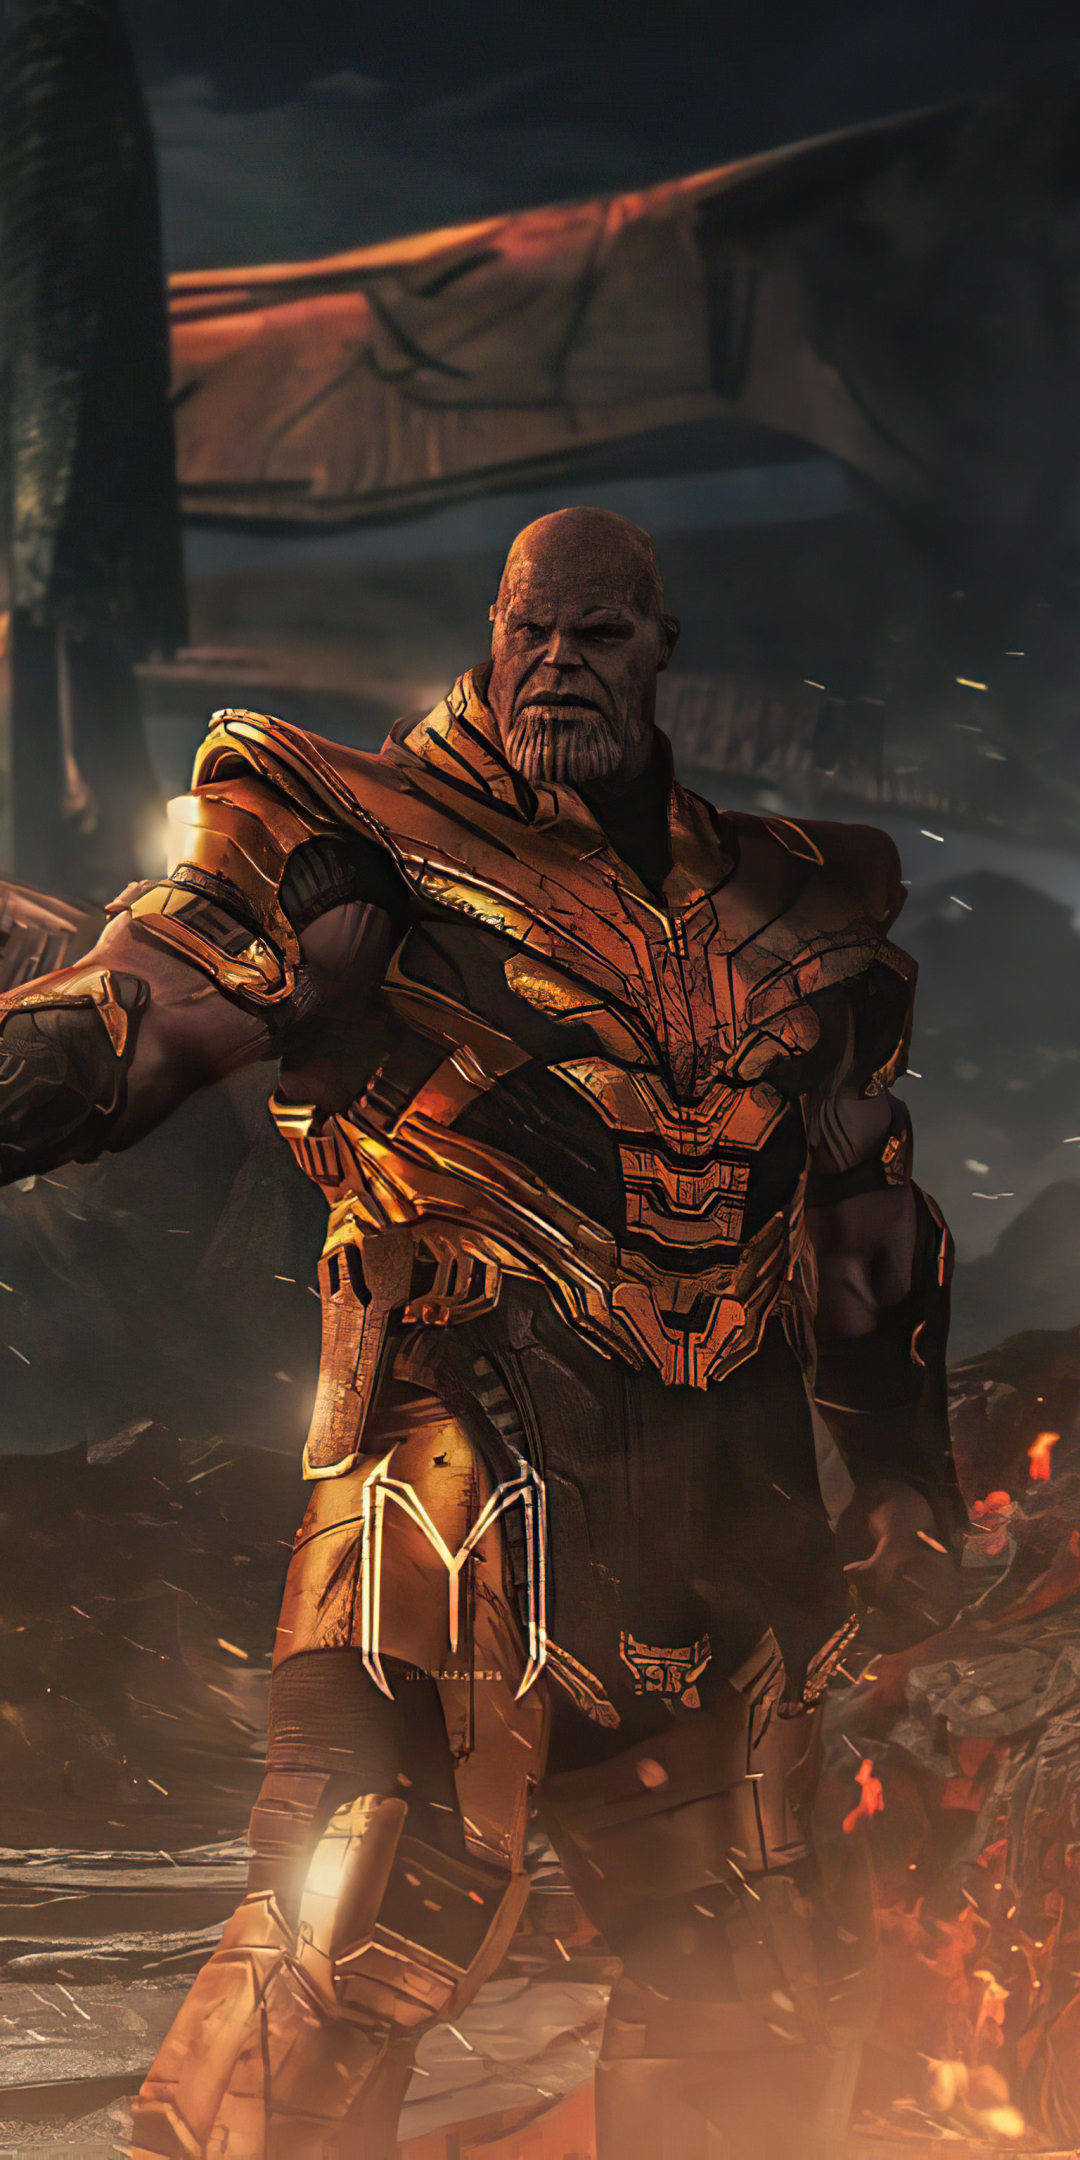 Descarga gratuita de fondo de pantalla para móvil de Los Vengadores, Películas, Thanos, Vengadores: Endgame.